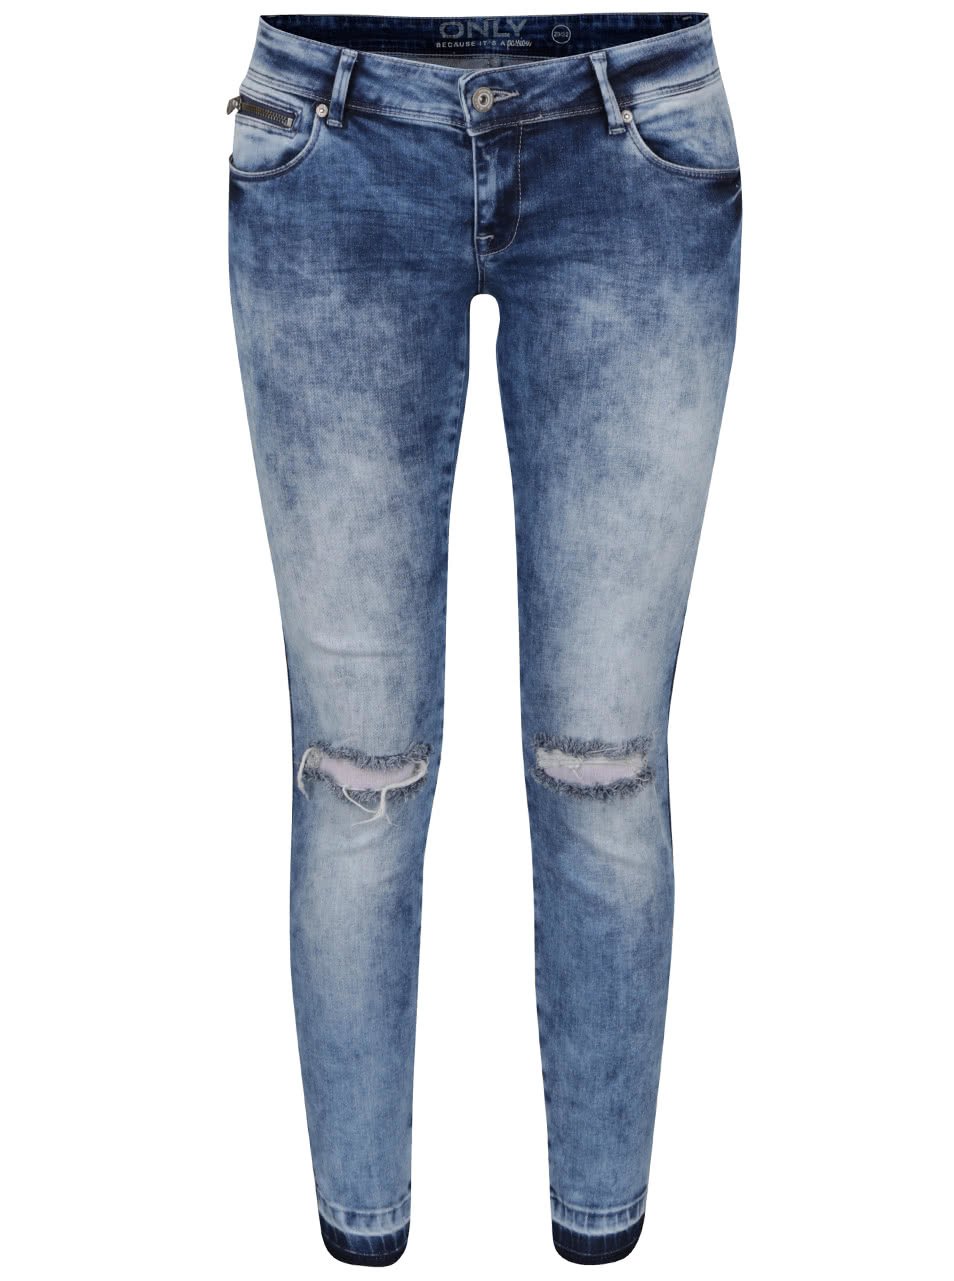 Světle modré vyšisované džíny s dírami na kolenou ONLY Coral